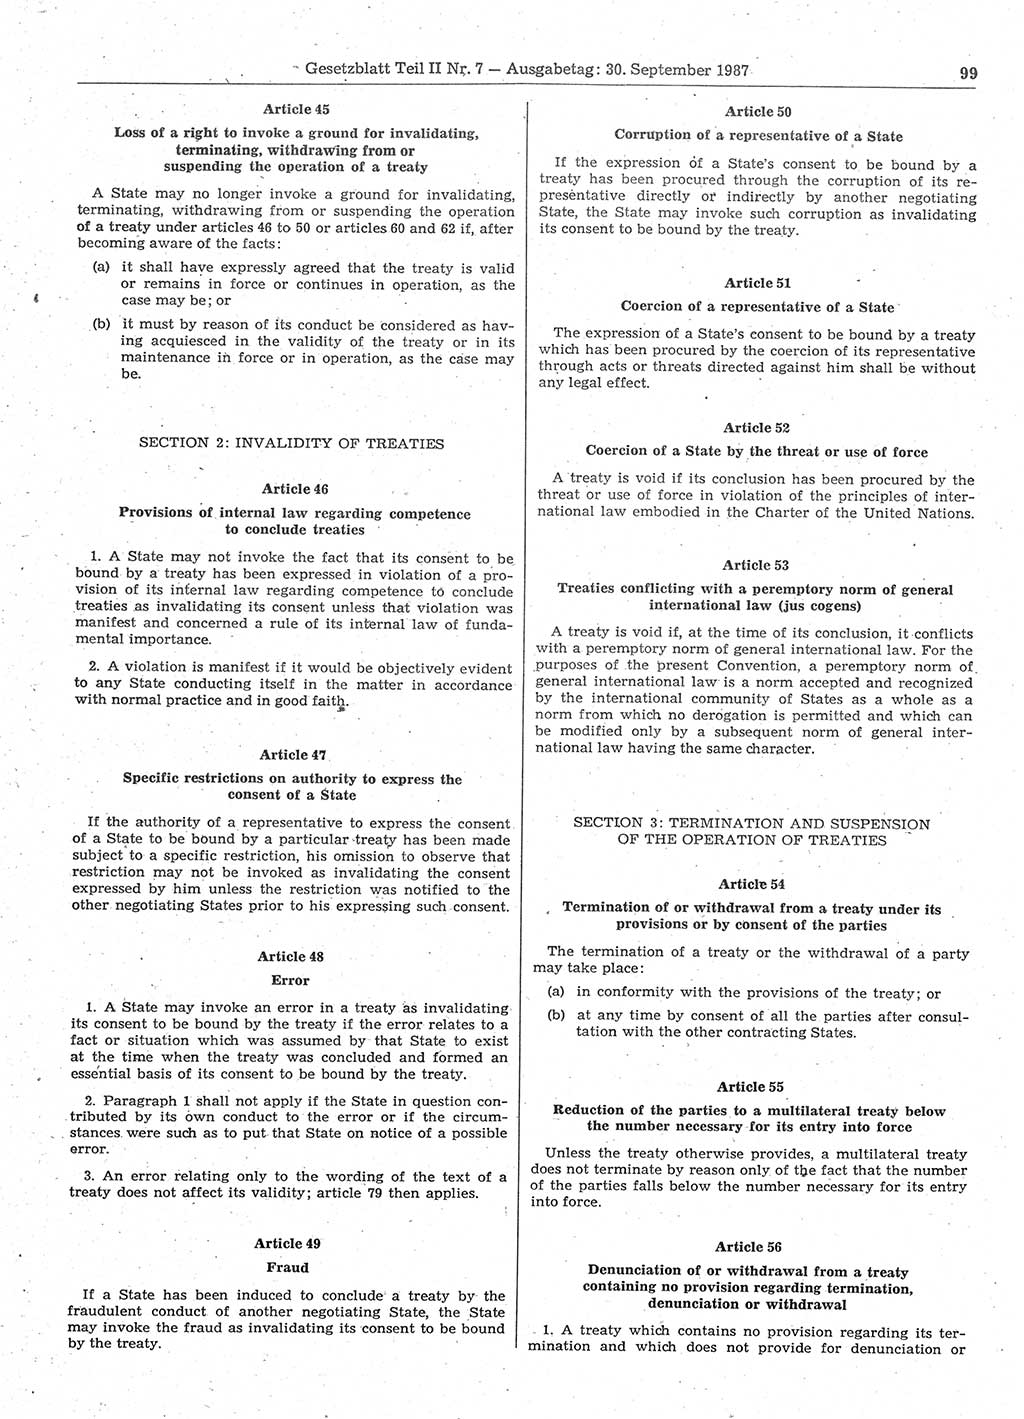 Gesetzblatt (GBl.) der Deutschen Demokratischen Republik (DDR) Teil ⅠⅠ 1987, Seite 99 (GBl. DDR ⅠⅠ 1987, S. 99)